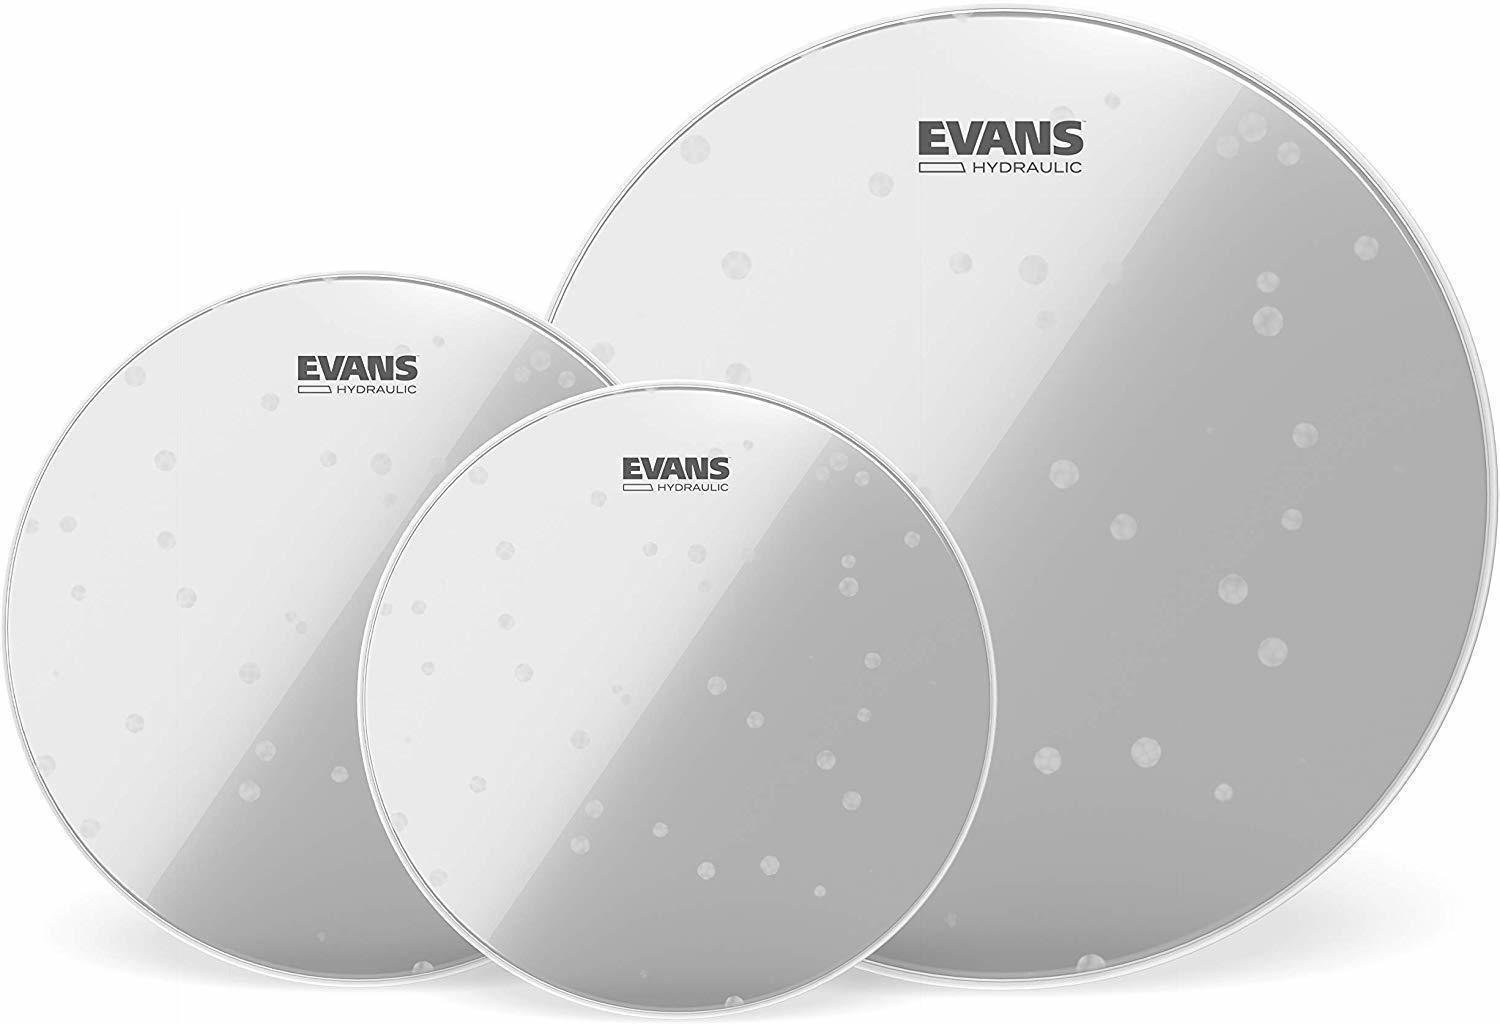 Fellsatz für Schlagzeug Evans ETP-HYDGL-F Hydraulic Glass Fusion Fellsatz für Schlagzeug